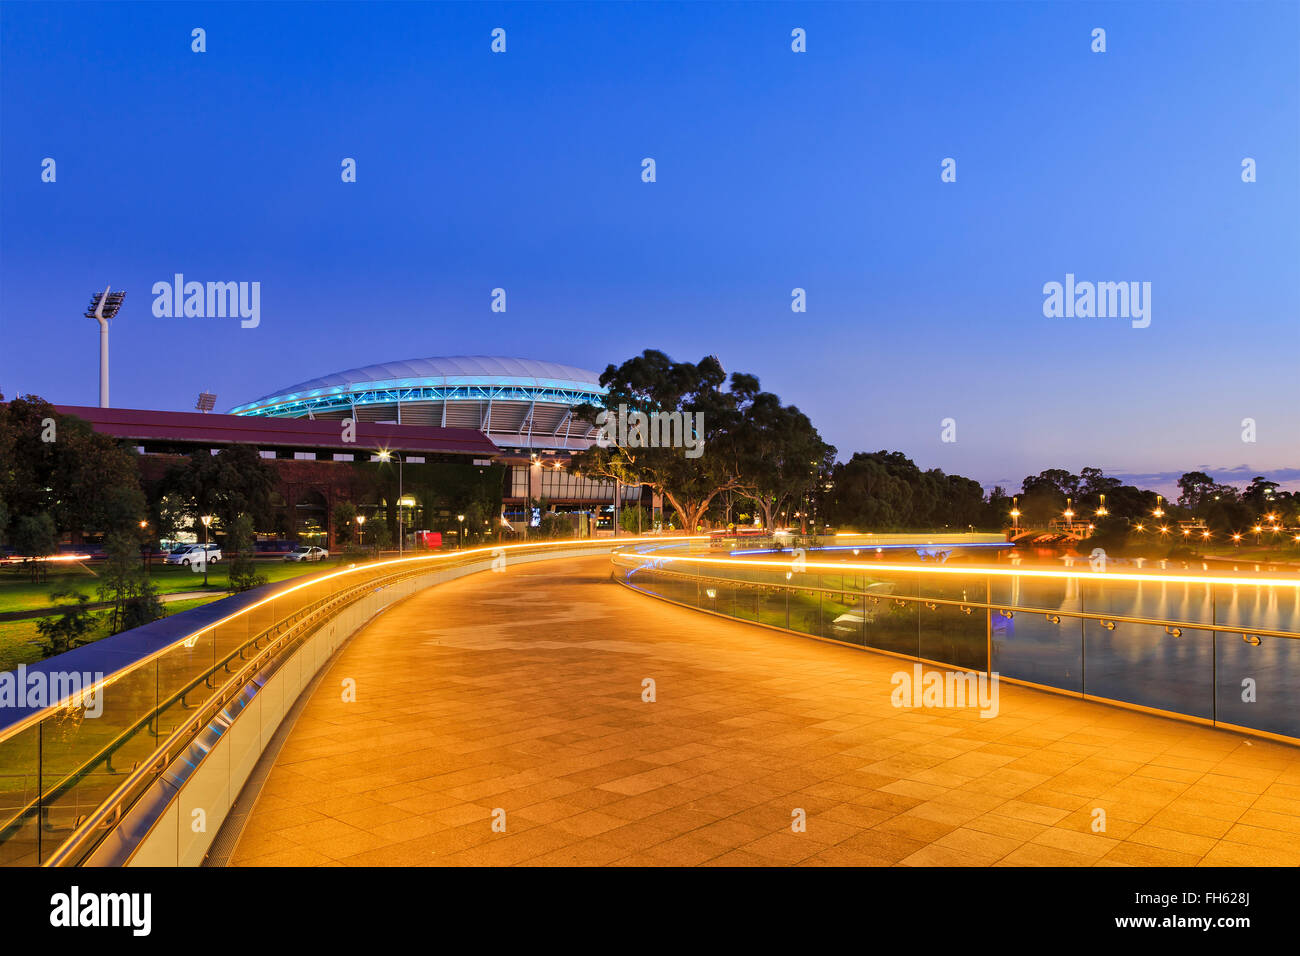 Breite der moderne Fußgängerbrücke über Torrens River in Adelaide, South Australia. Helle Beleuchtung Licht reflektieren in ruhigen Gewässern Stockfoto